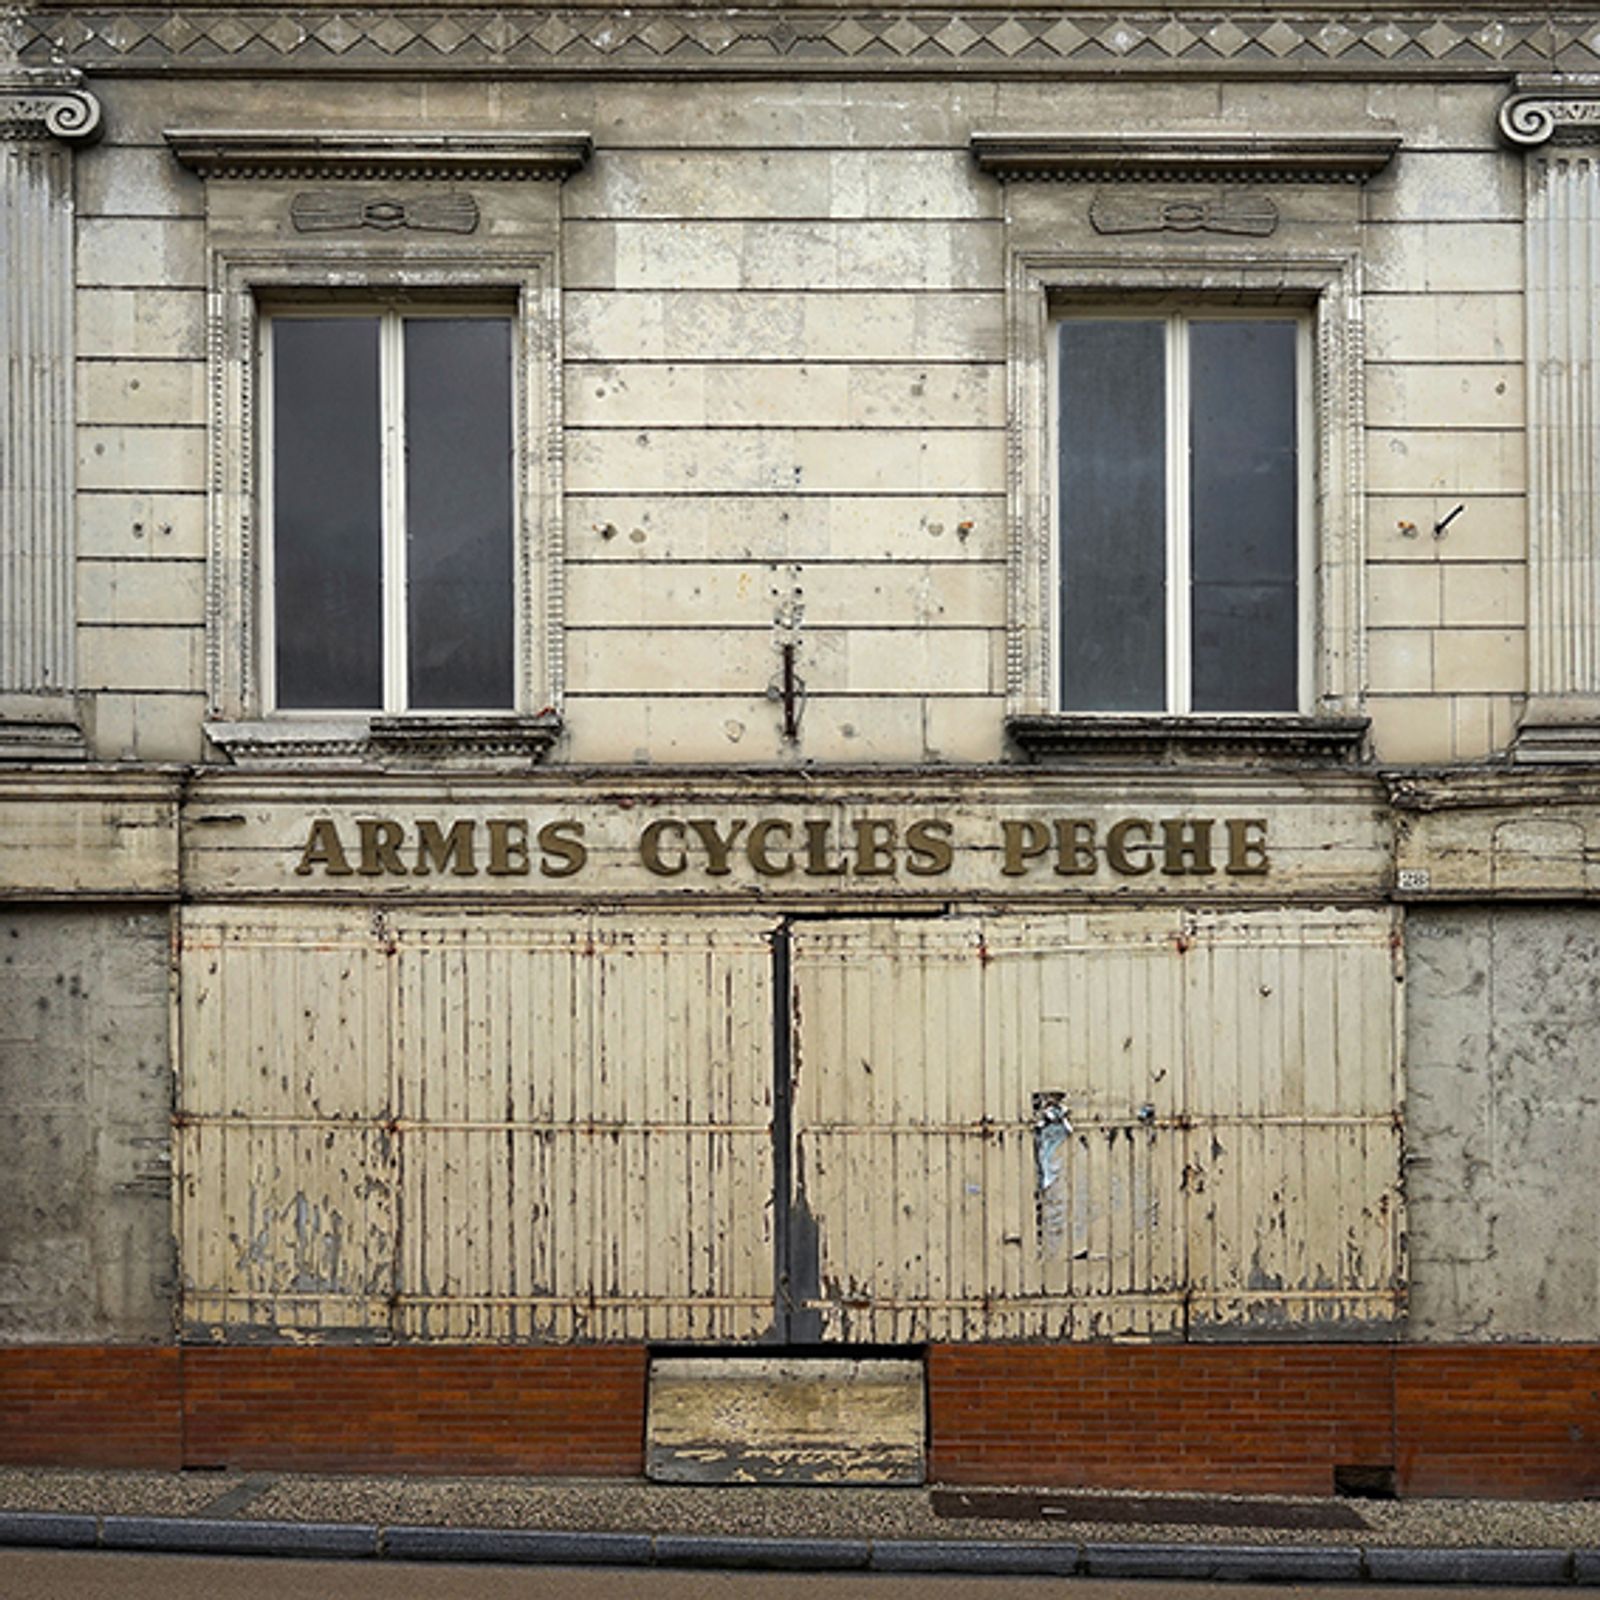 © Thibaut Derien - Armes Cycles Pêche